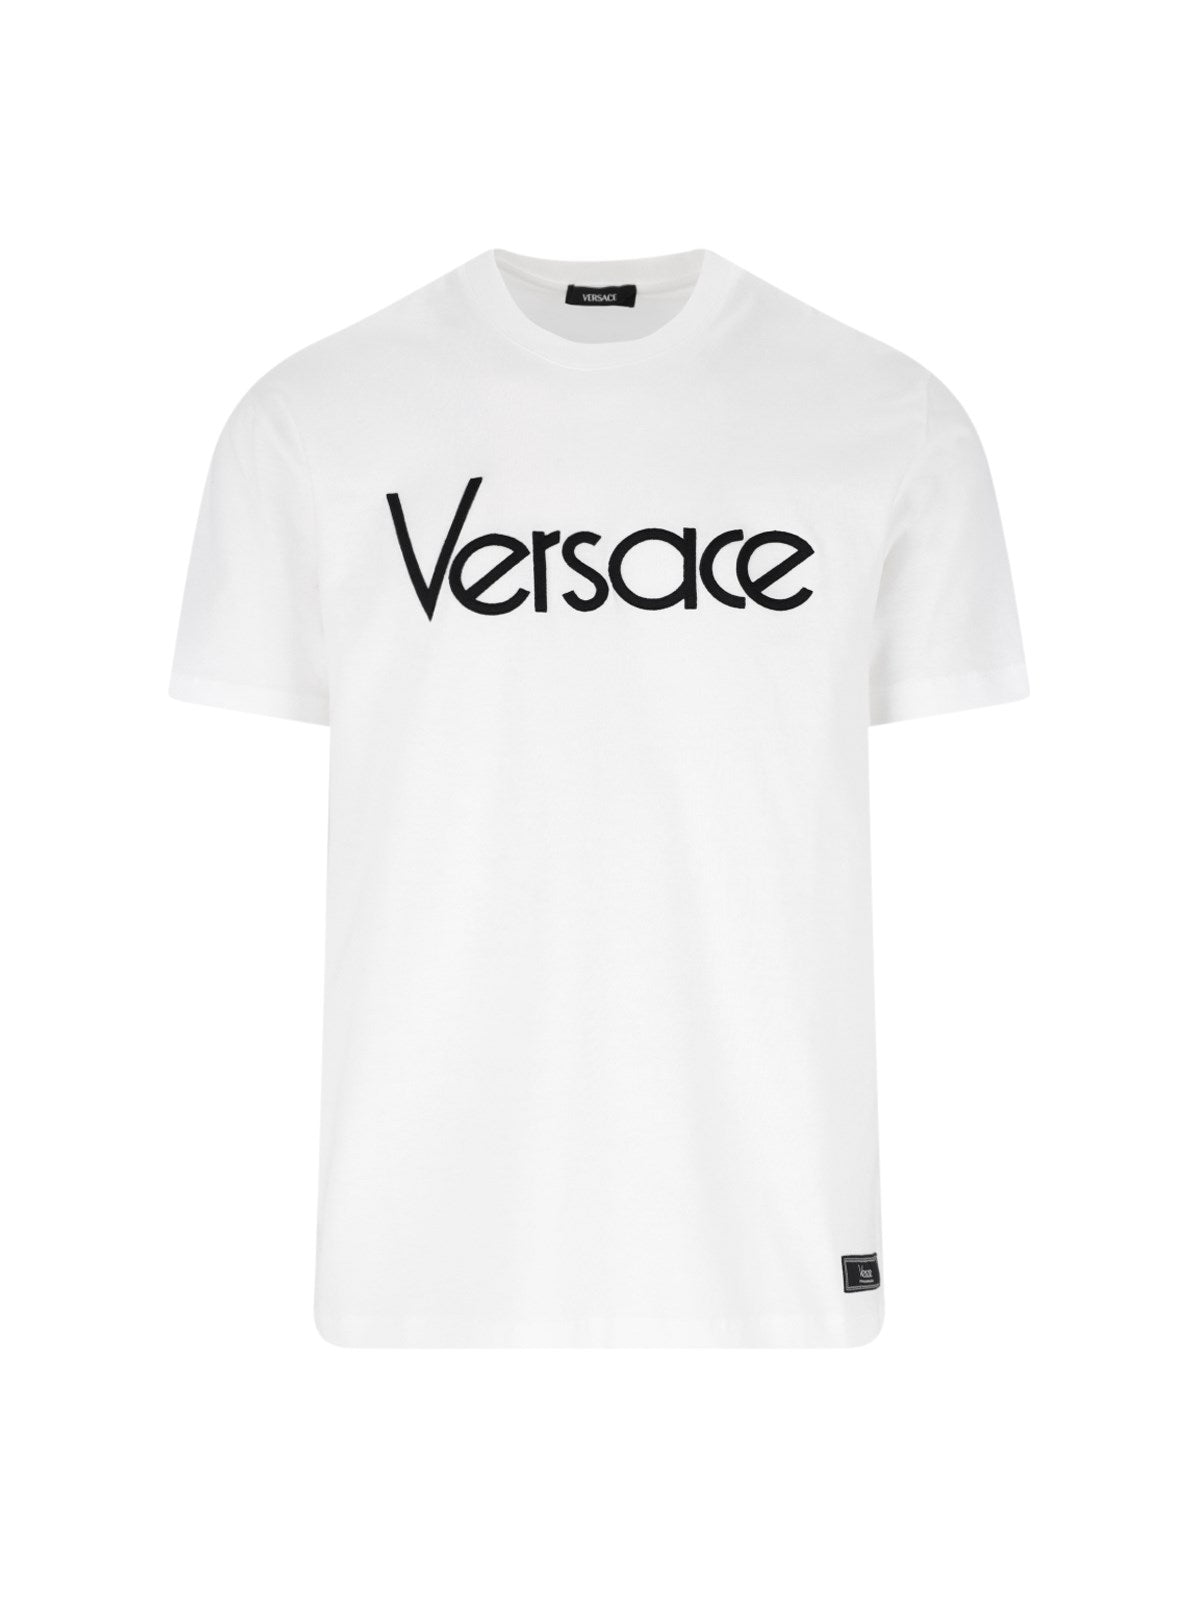 Versace T-Shirt logo-t-shirt-Versace-T-shirt logo Versace, in cotone bianco, girocollo, maniche corte, stampa logo applicata fronte, patch logo applicato fondo, orlo dritto.-Dresso